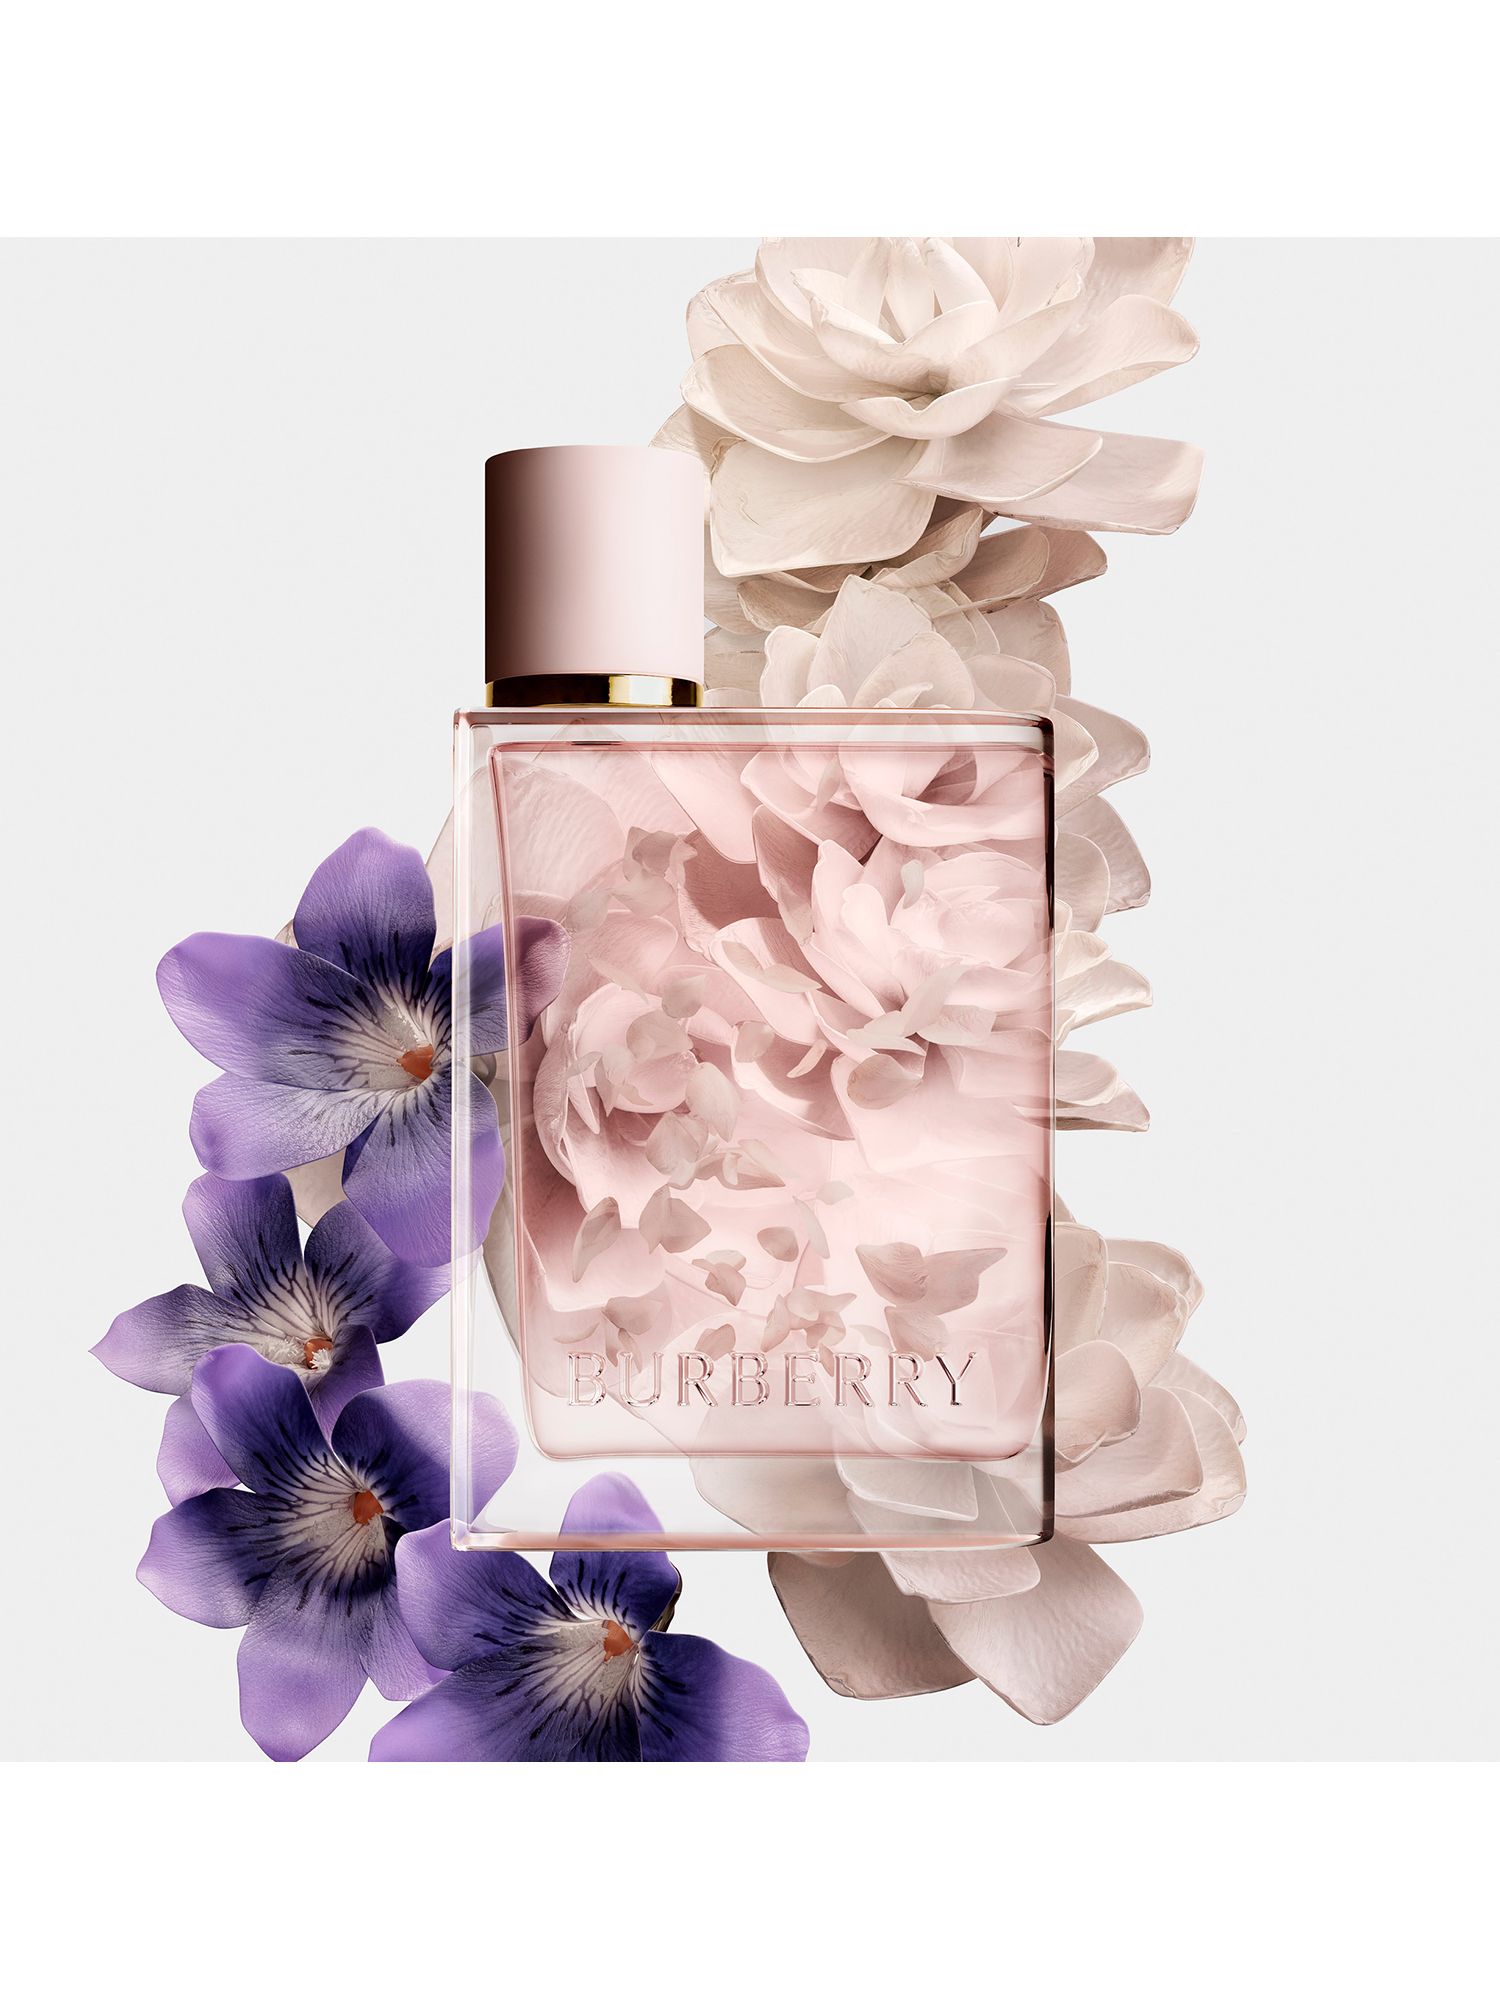 Burberry Her Petals Eau de Parfum Limited Edition, 88ml 3